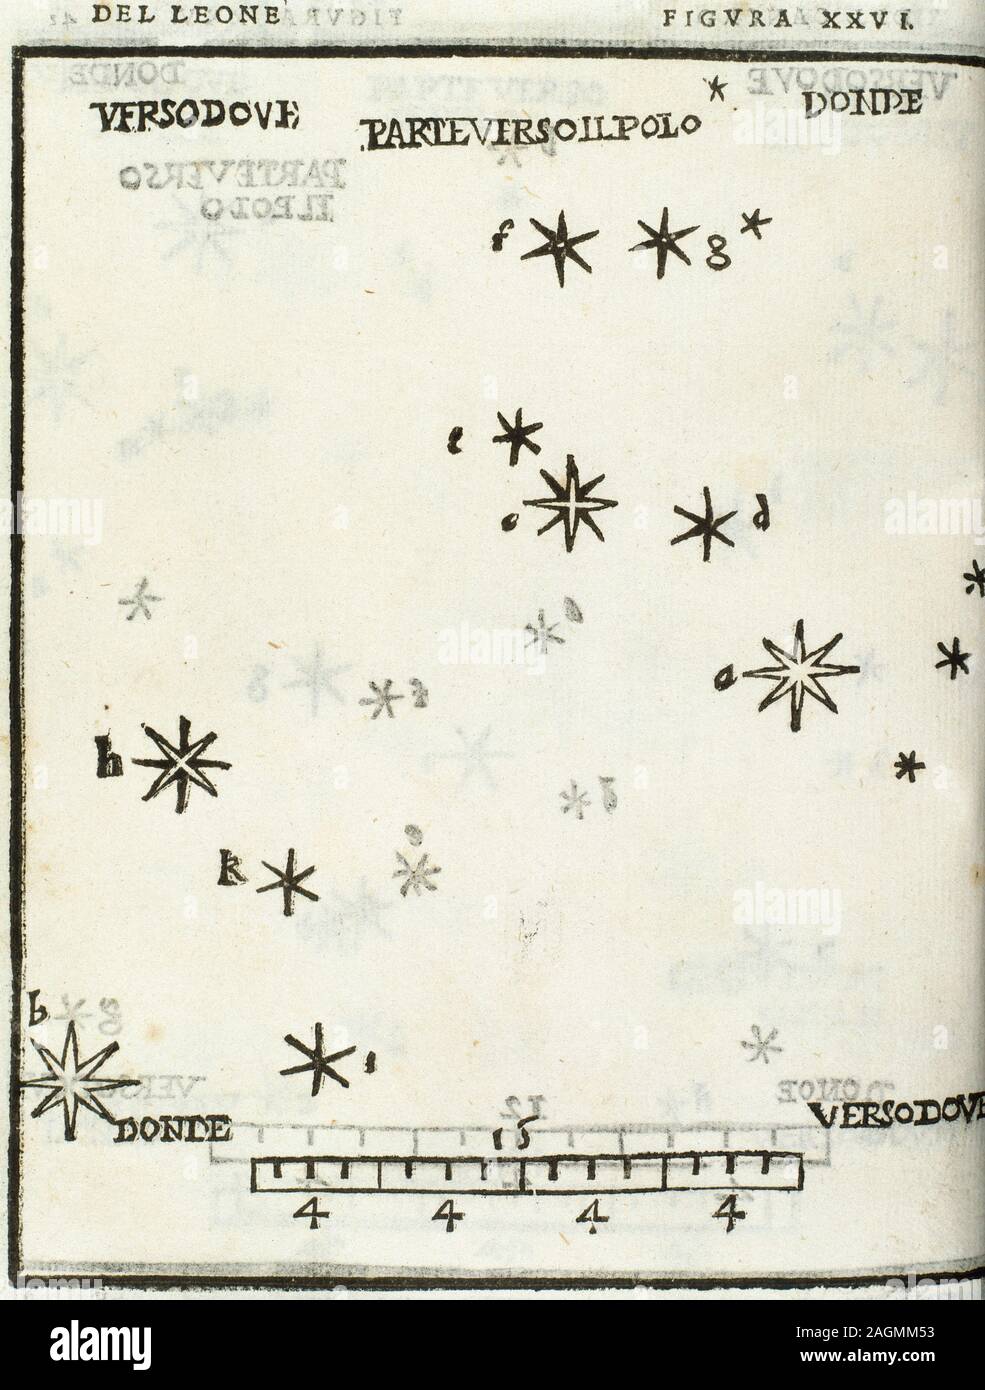 Alessandro Piccolomini (1508-1578). Italienische Astronom und Humanist. 'Leo Konstellation". De le stelle fisse (die Sphäre der Welt und der Fixsterne). In Venedig, 1540 bearbeitet werden. Gravur, 1559. Stockfoto